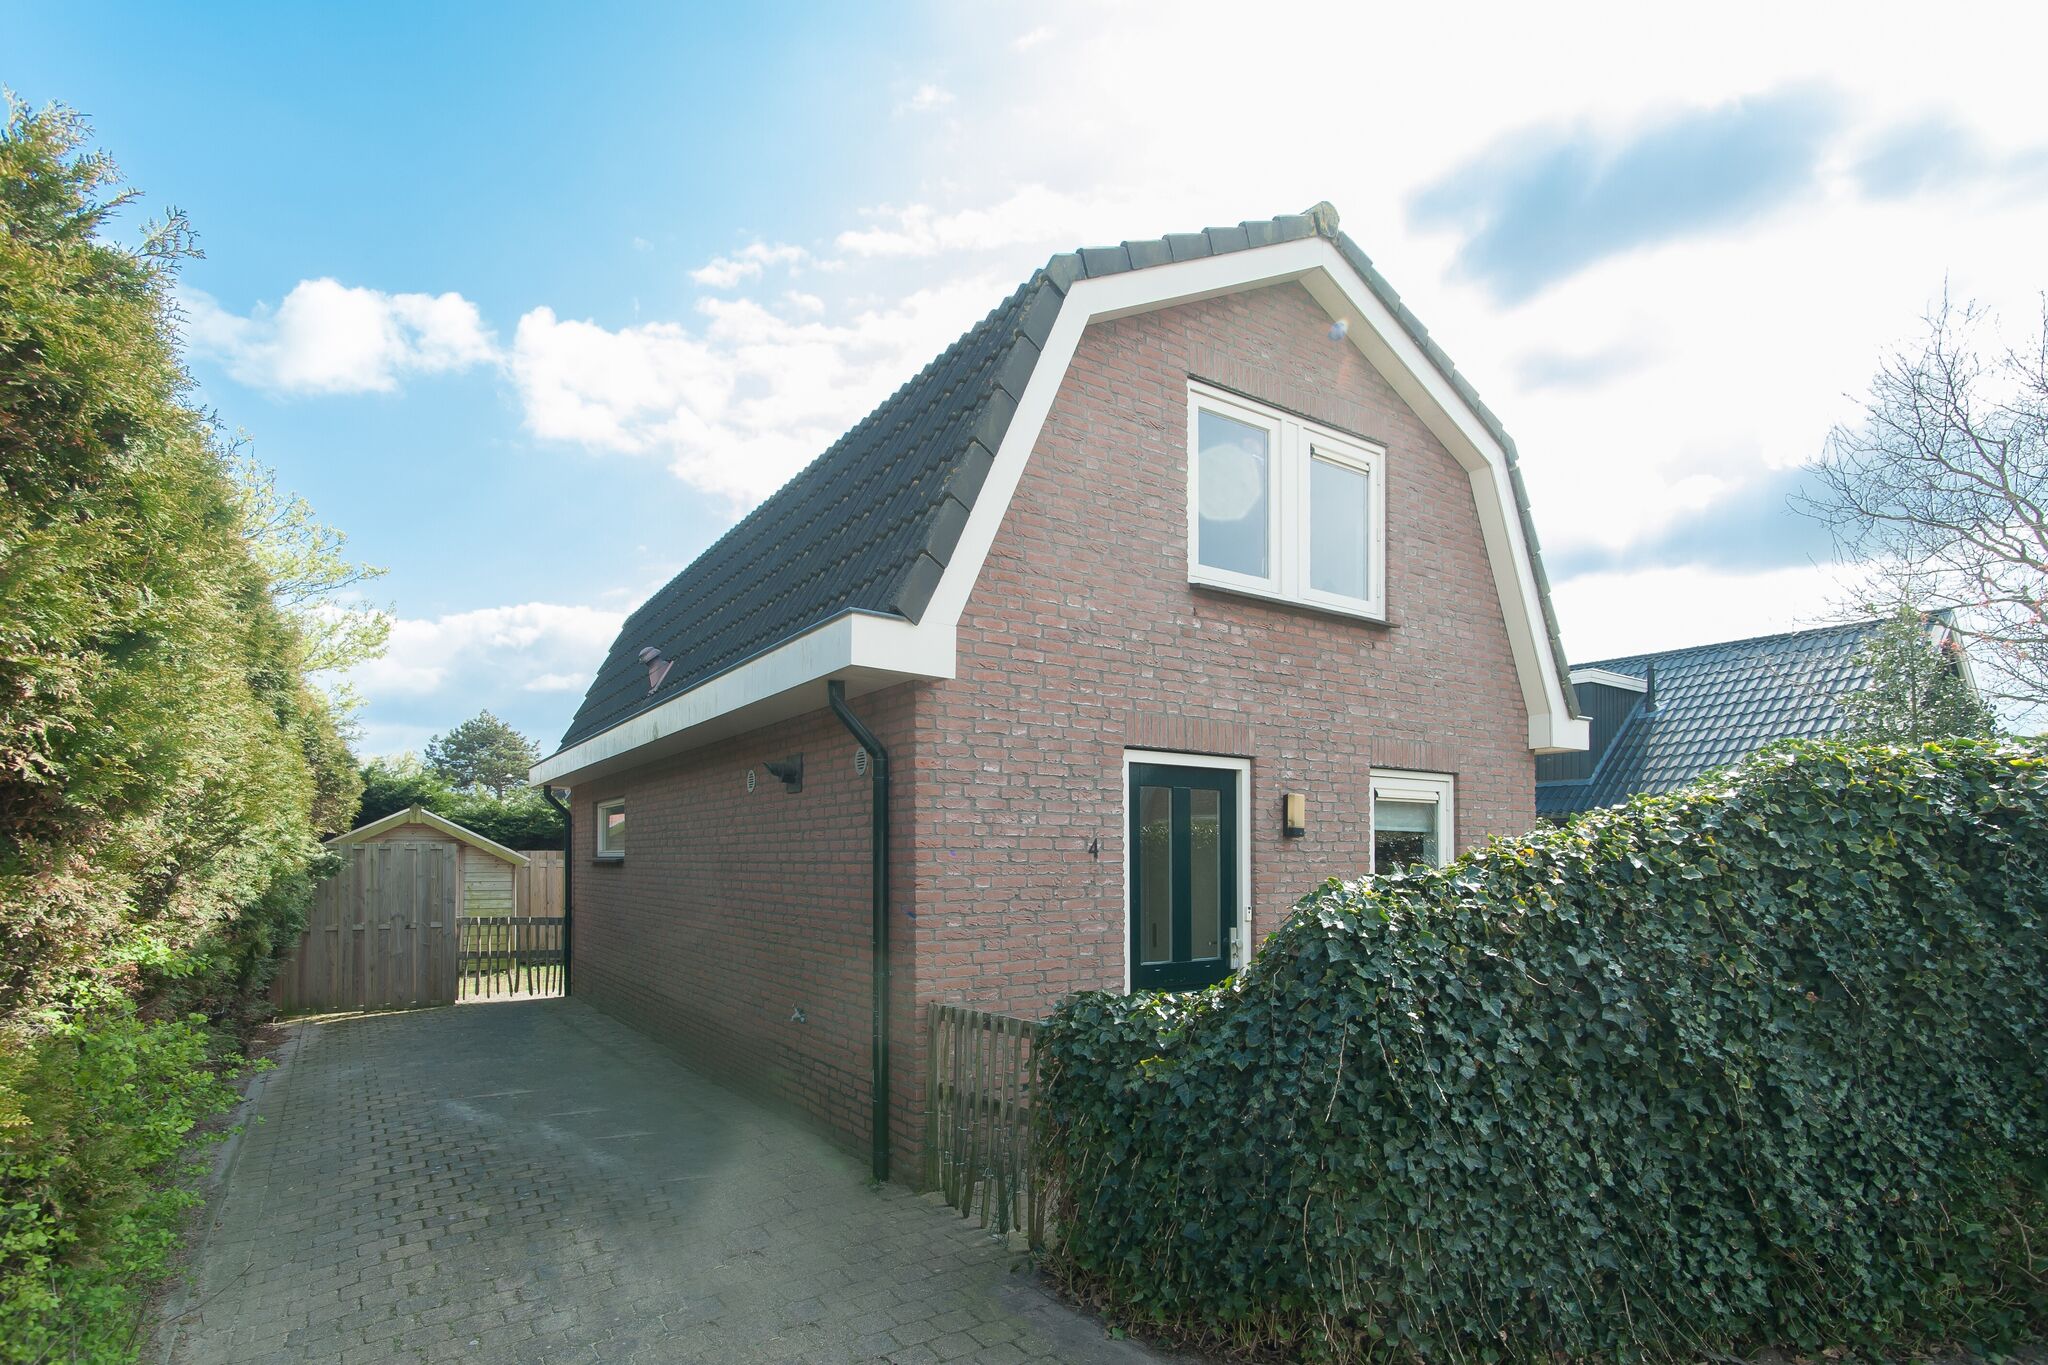 Nice house with large garden in Noordwijk